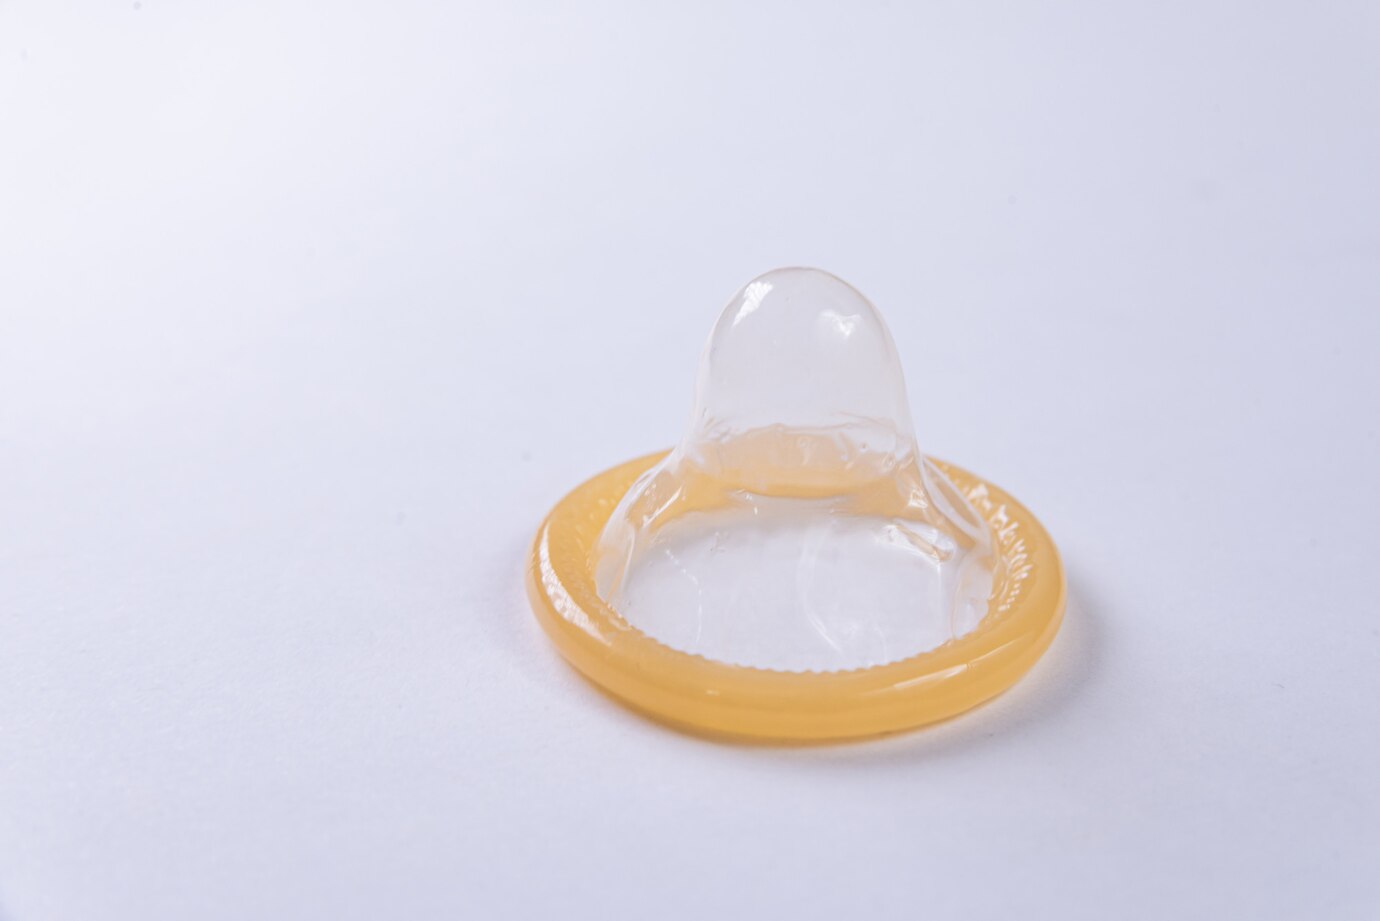 vybalený kondom